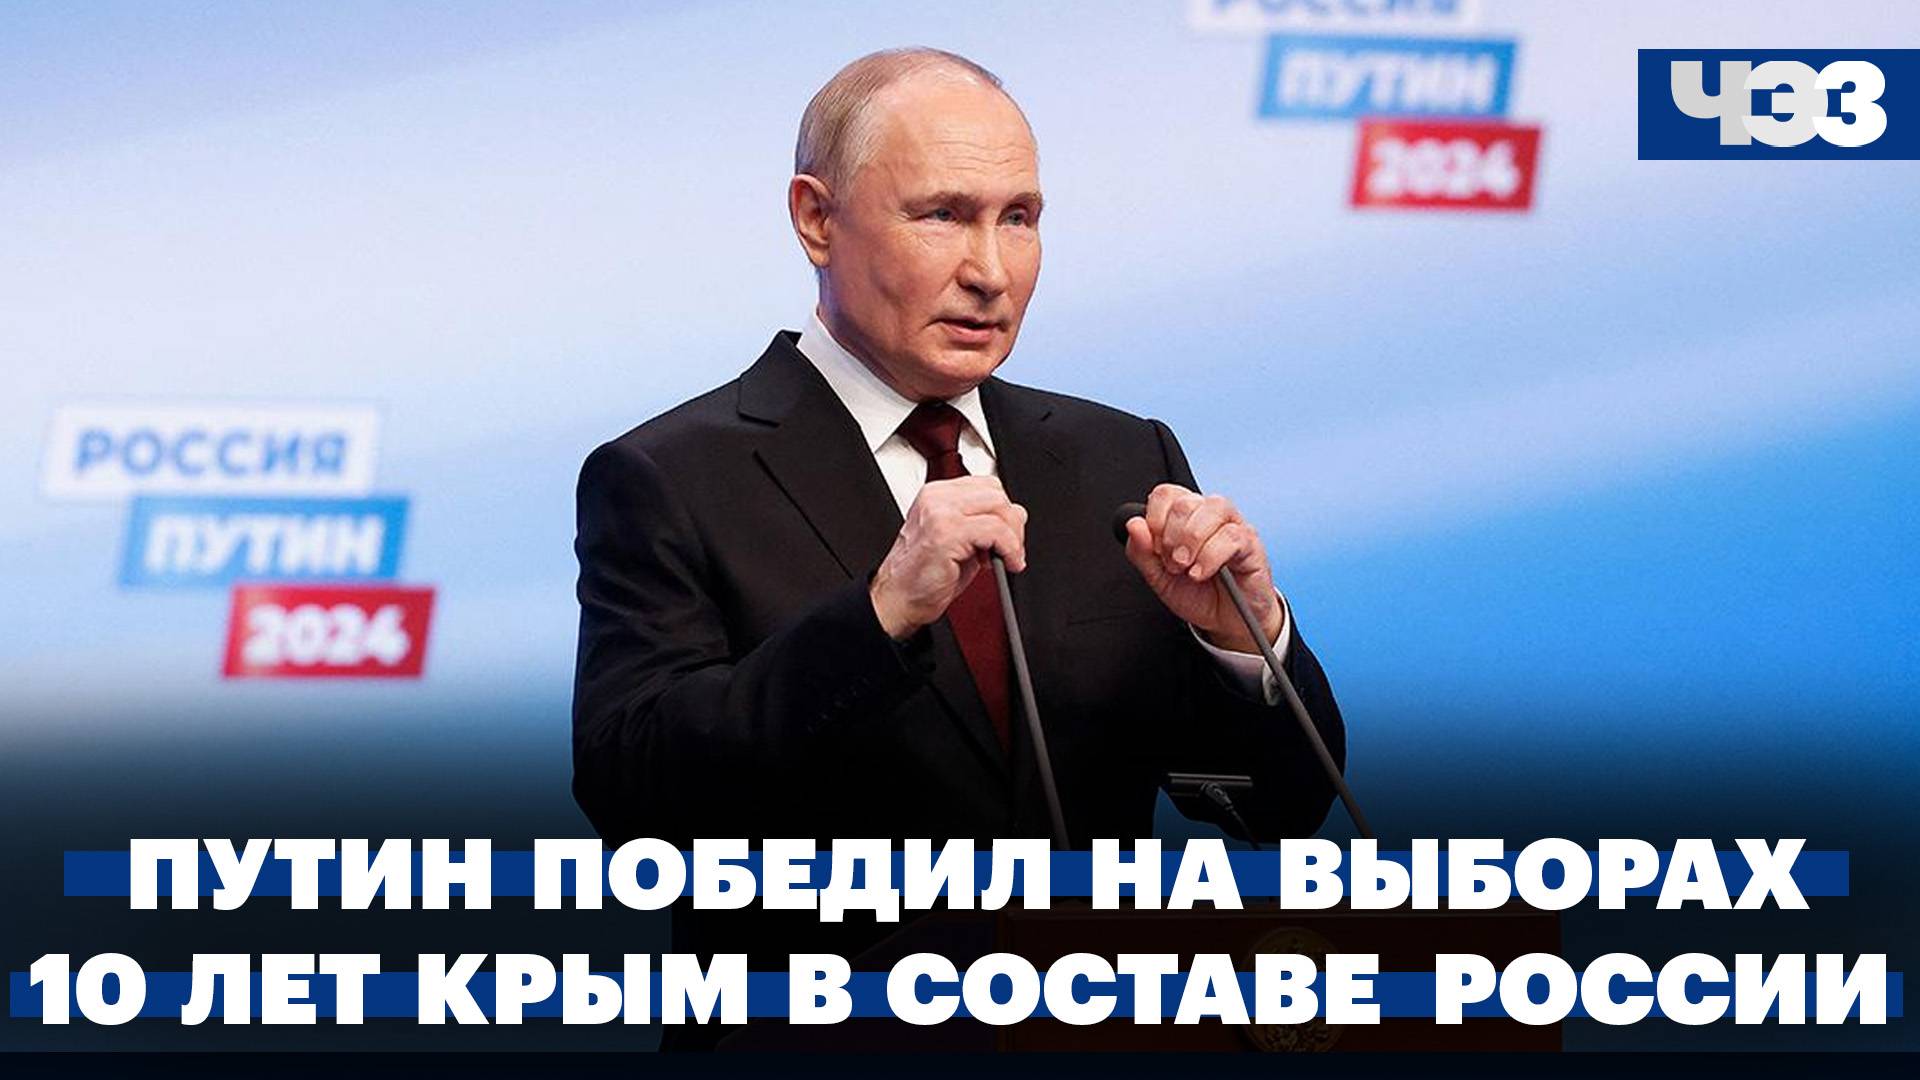 Владимир Путин победил на президентских выборах. 10 лет со дня воссоединения Крыма с Россией